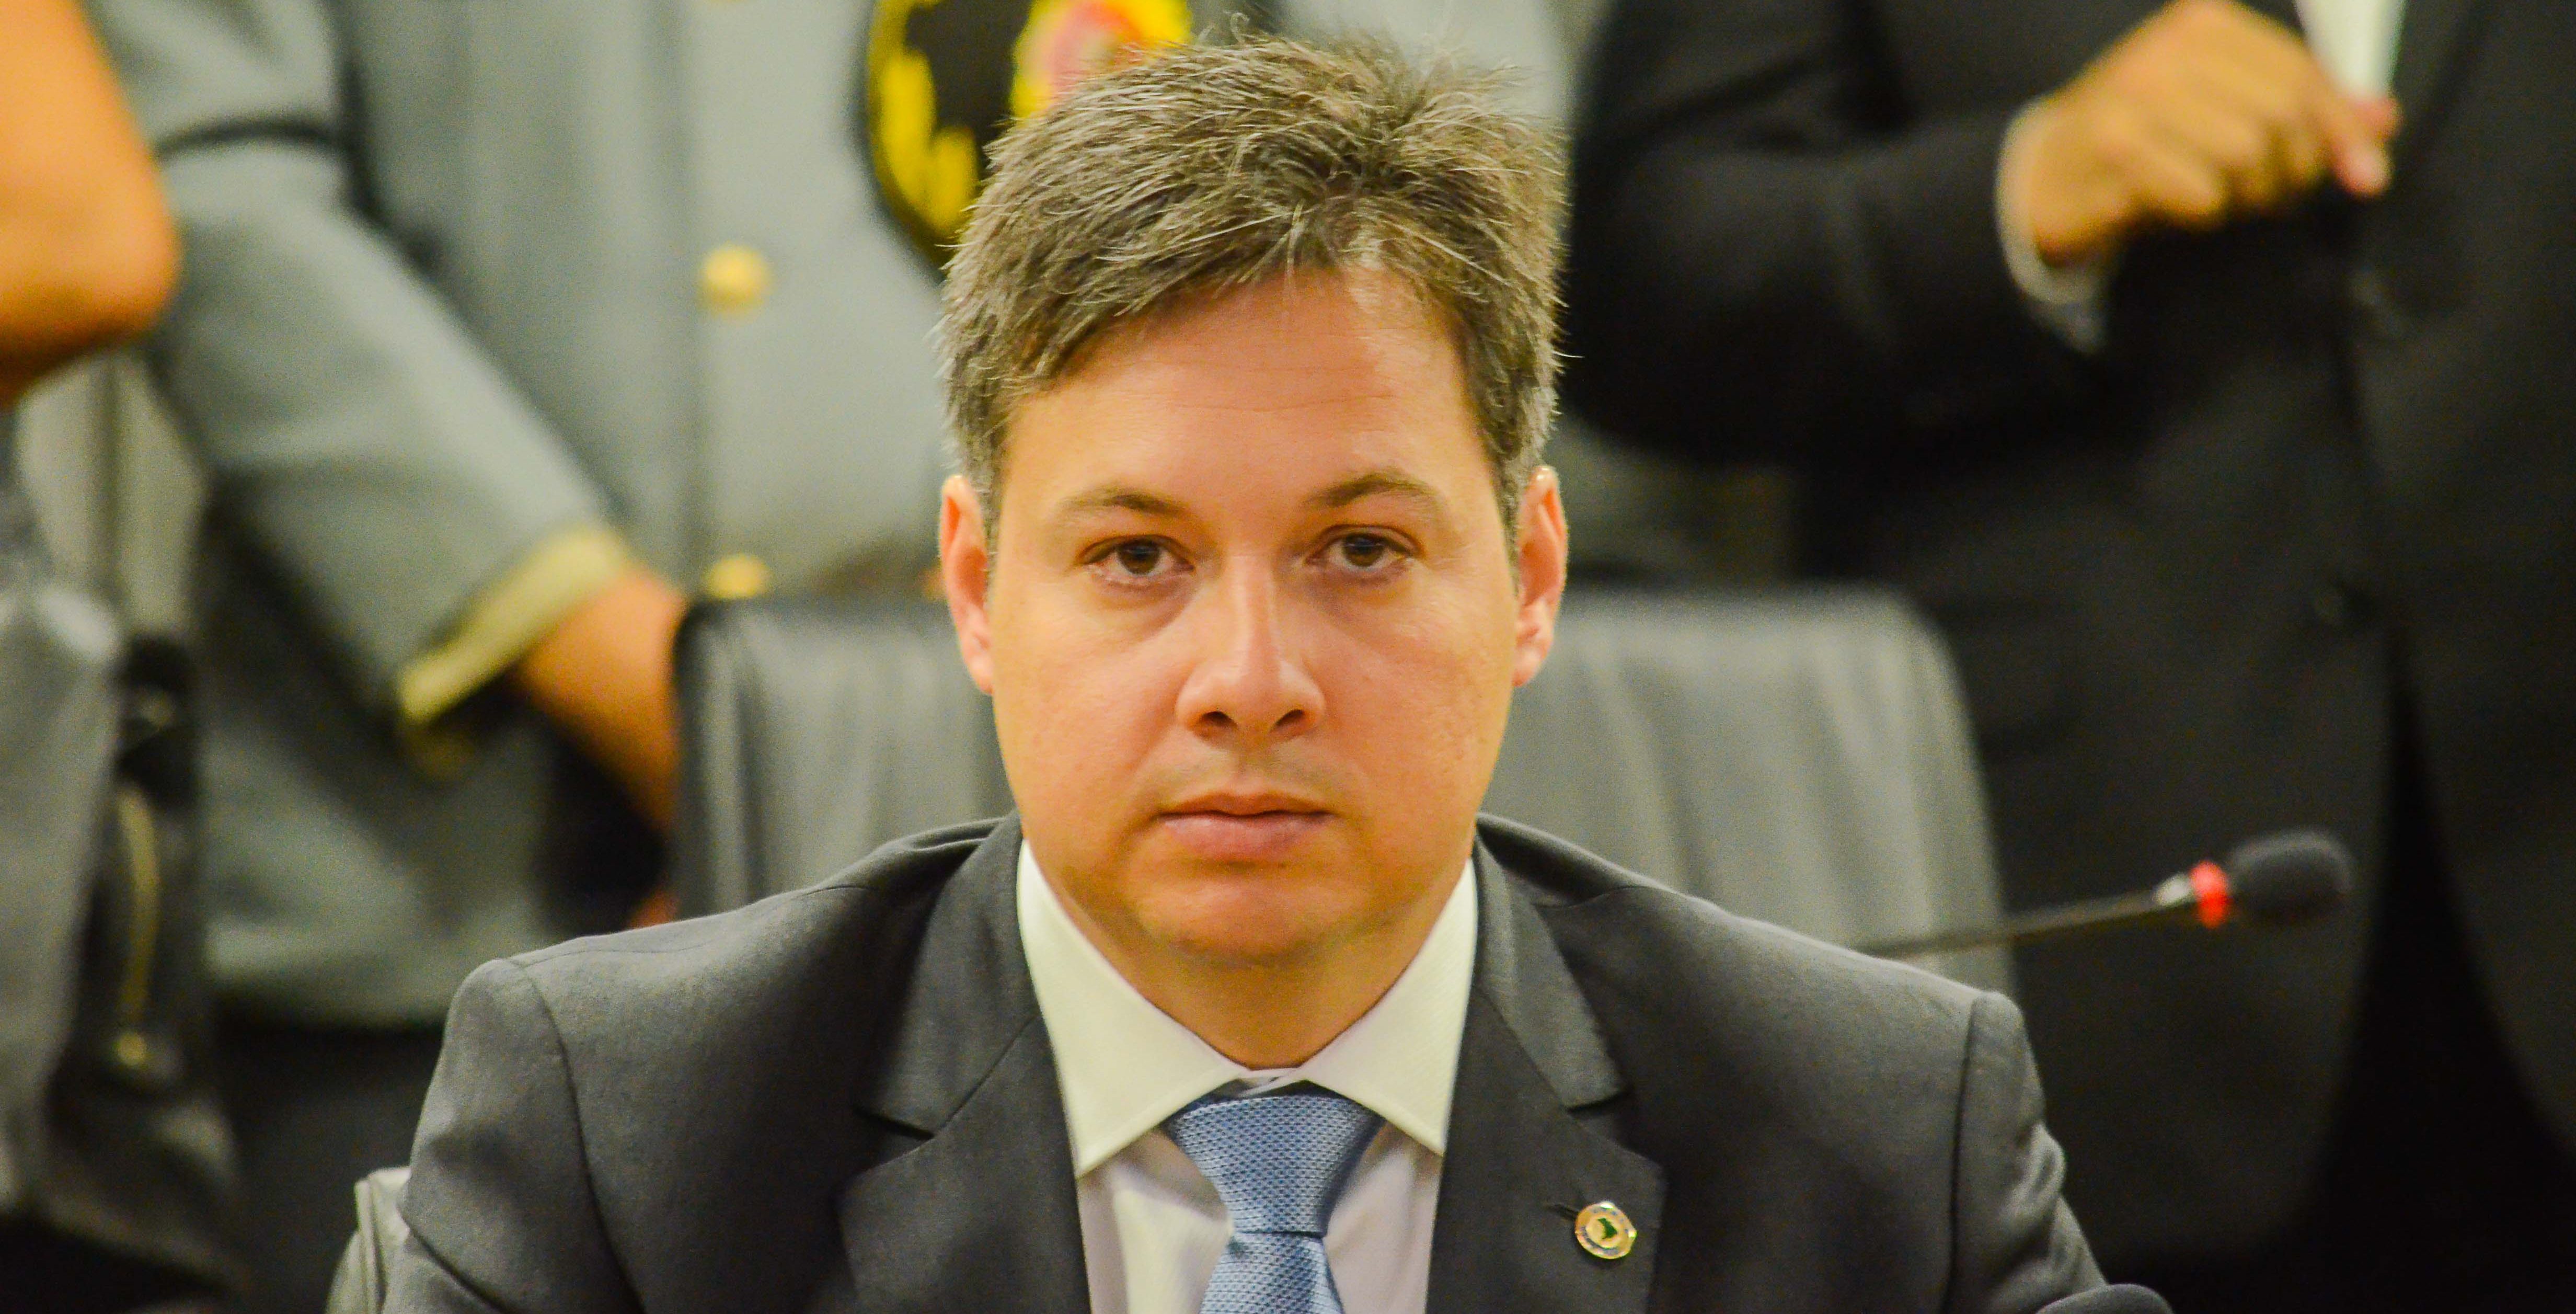 Júnior Araújo demonstra insatisfação e diz que “não há nenhuma chance” de esposa voltar à presidência do PDT em Cajazeiras